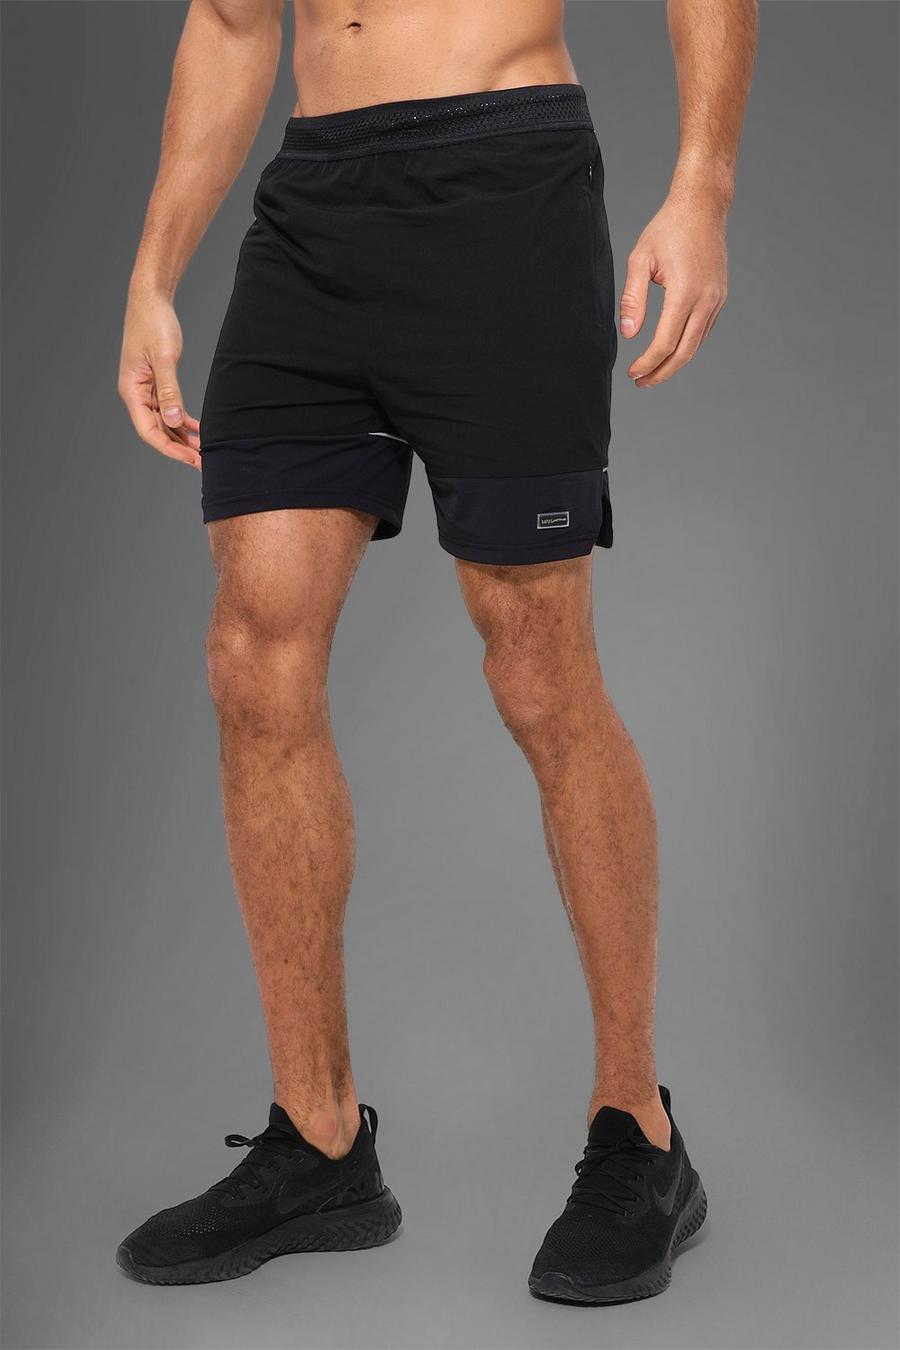 Pantalón corto MAN Active deportivo de nailon resistente, Black negro